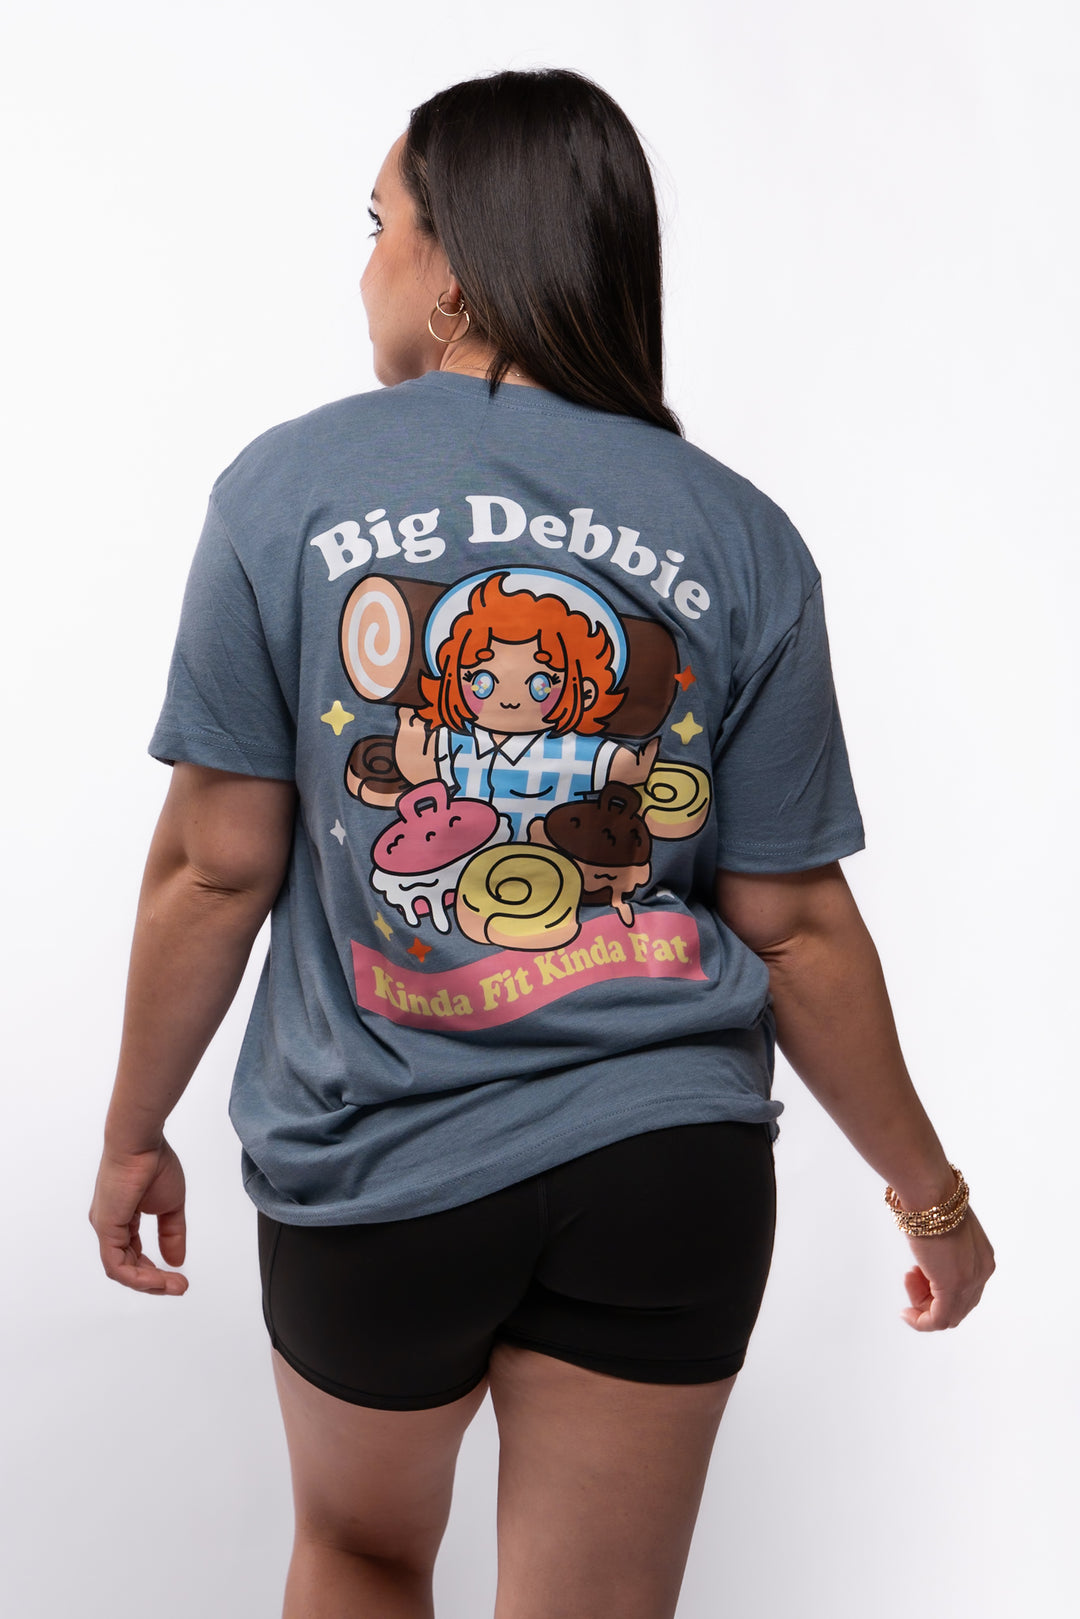 Big Debbie Signature Blend T-Shirt